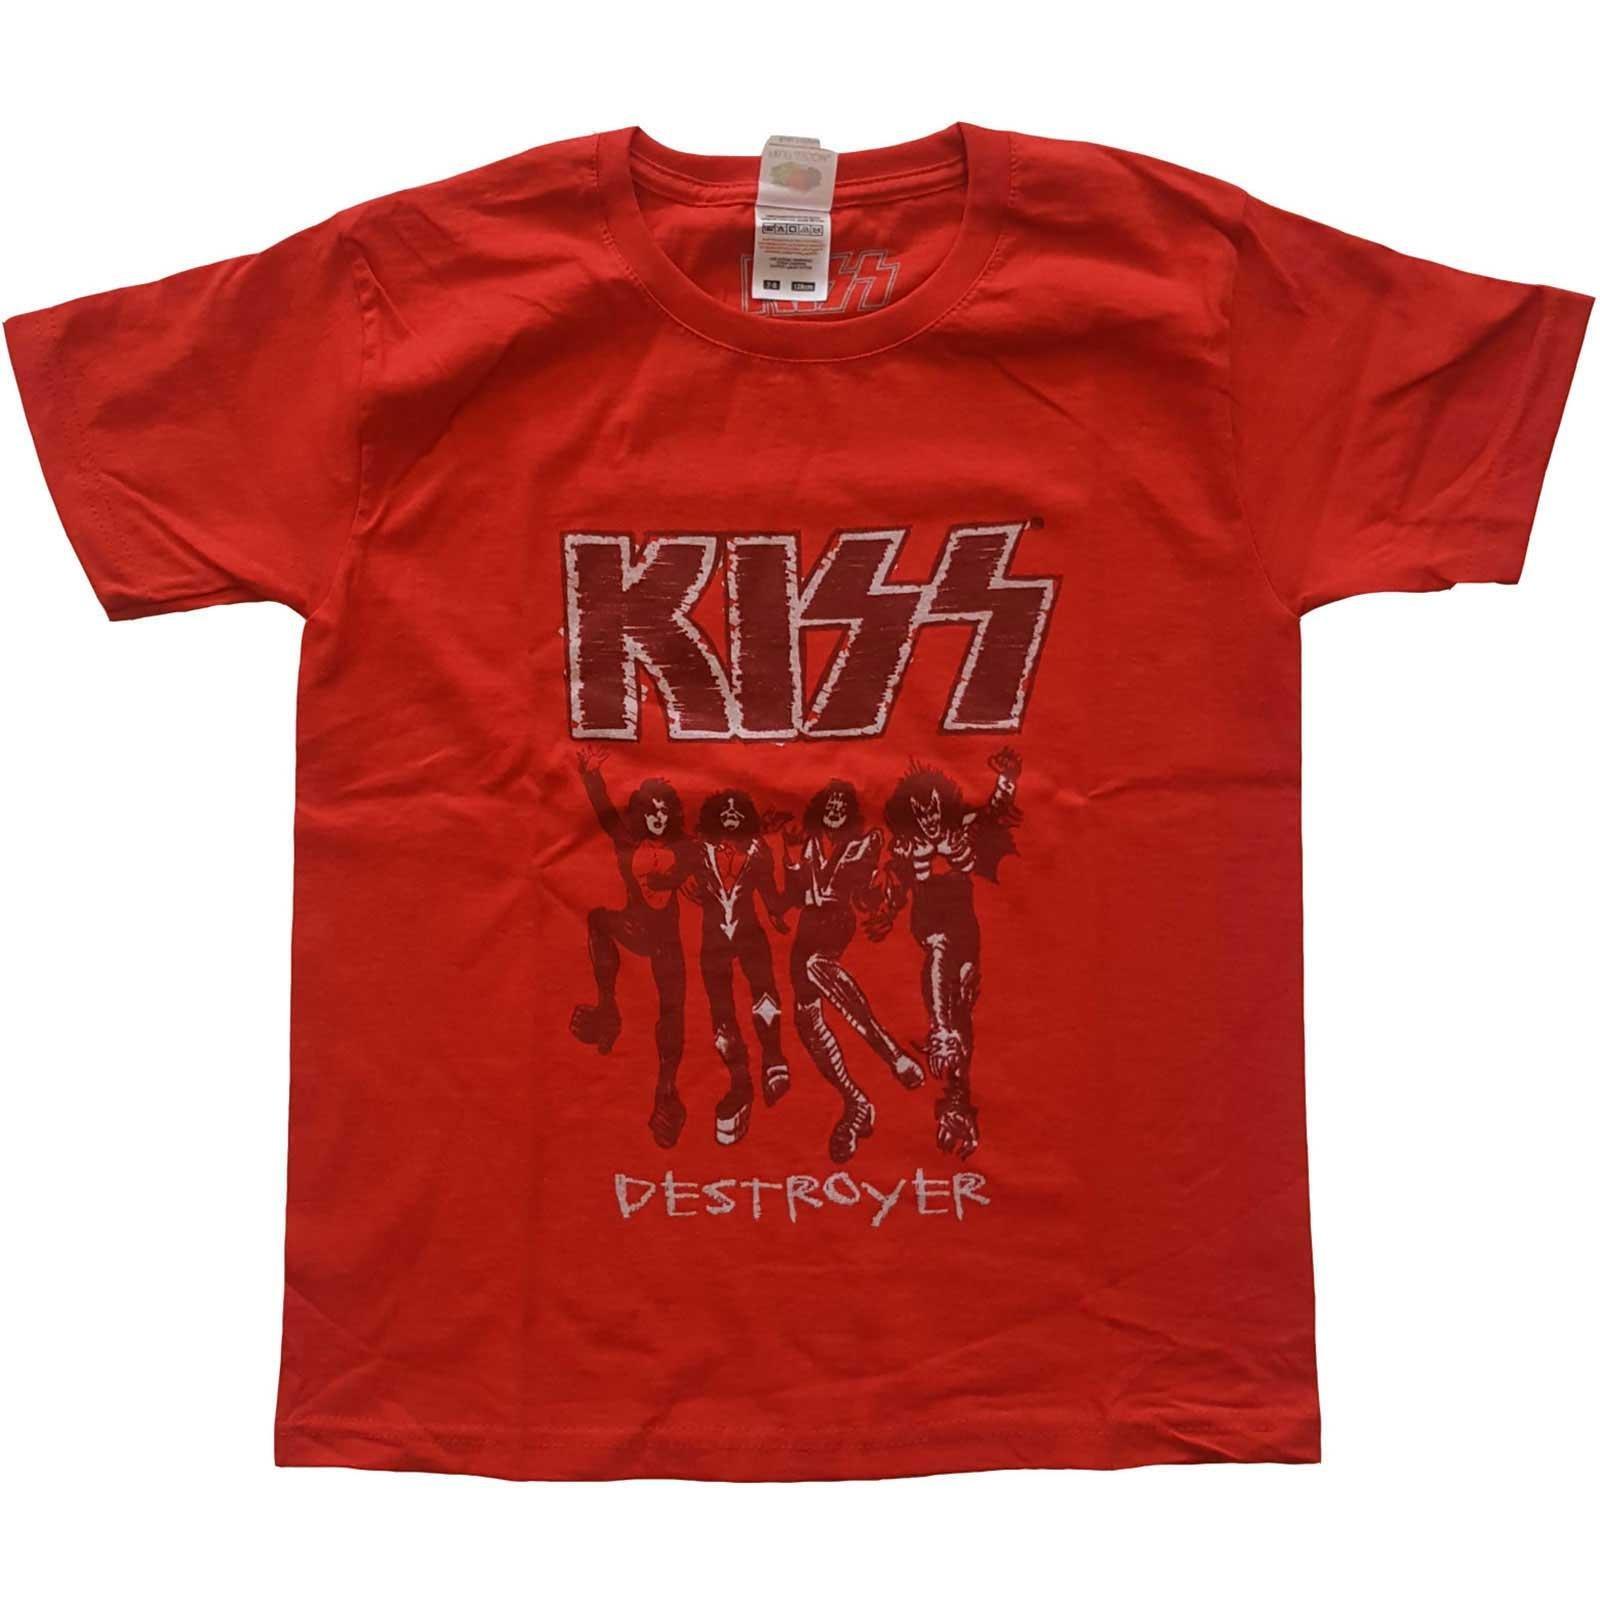 Destroyer Tshirt Jungen Rot Bunt 128 von KISS